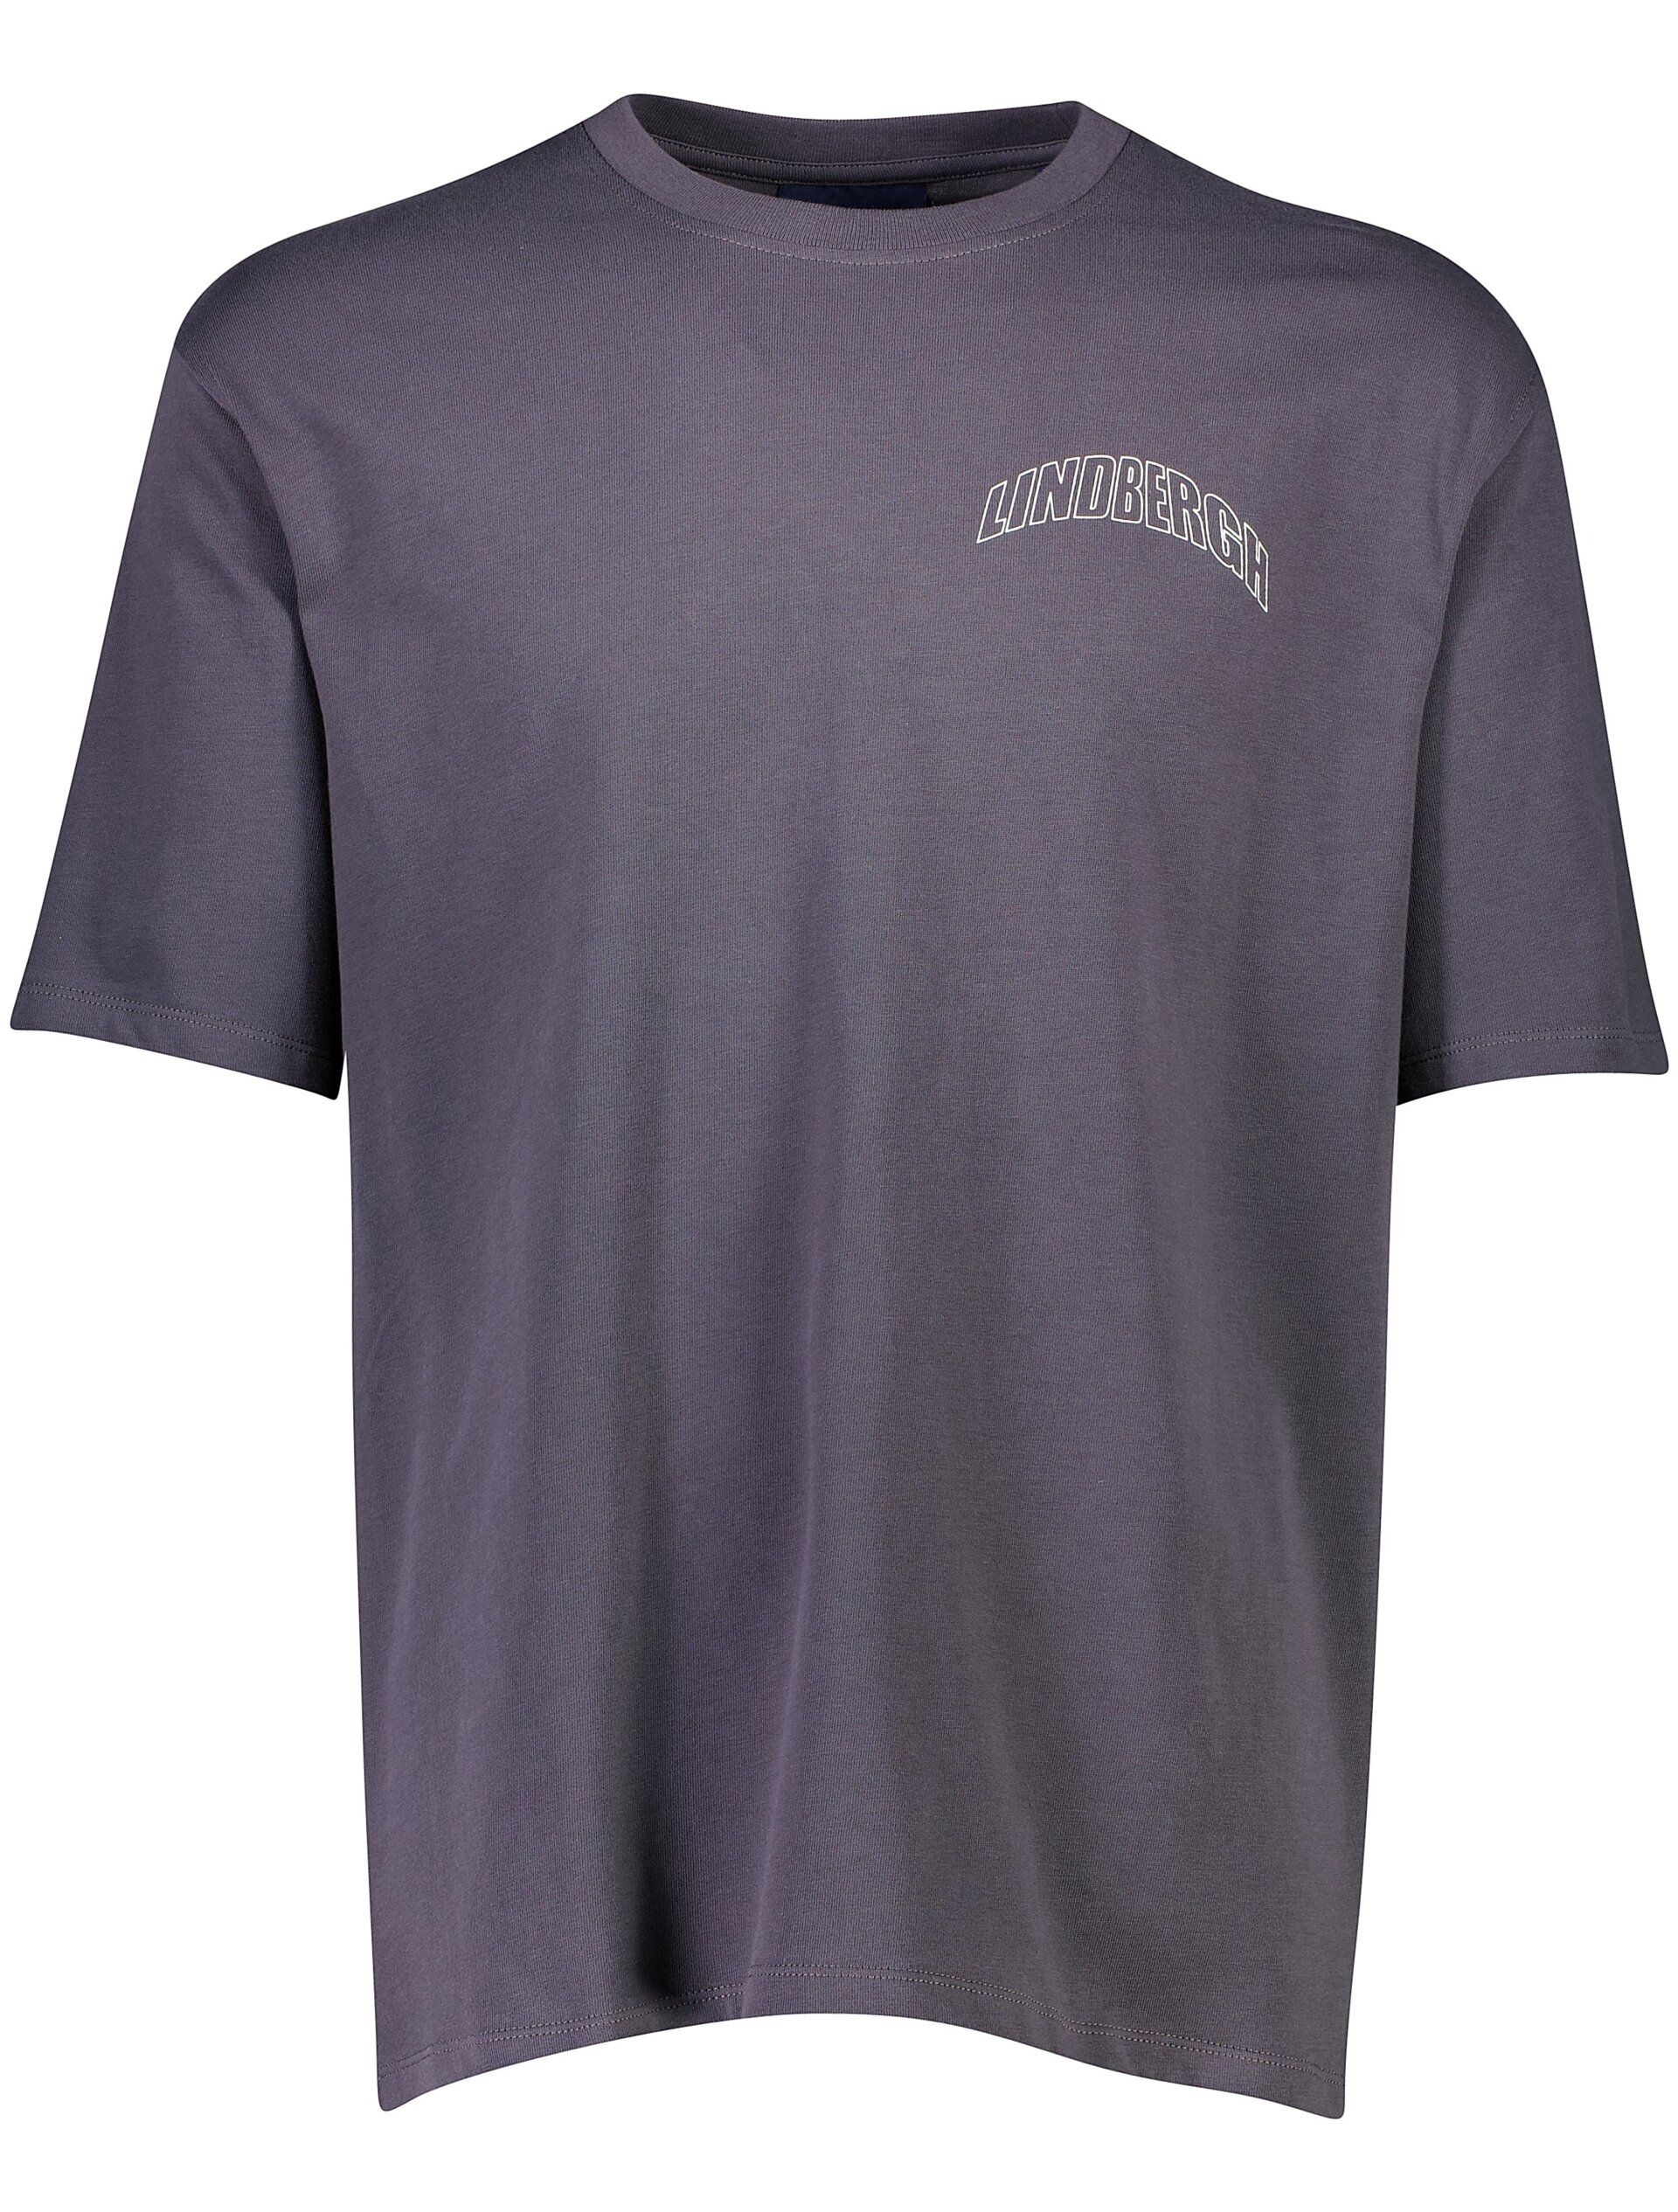 Lindbergh T-shirt grå / charcoal